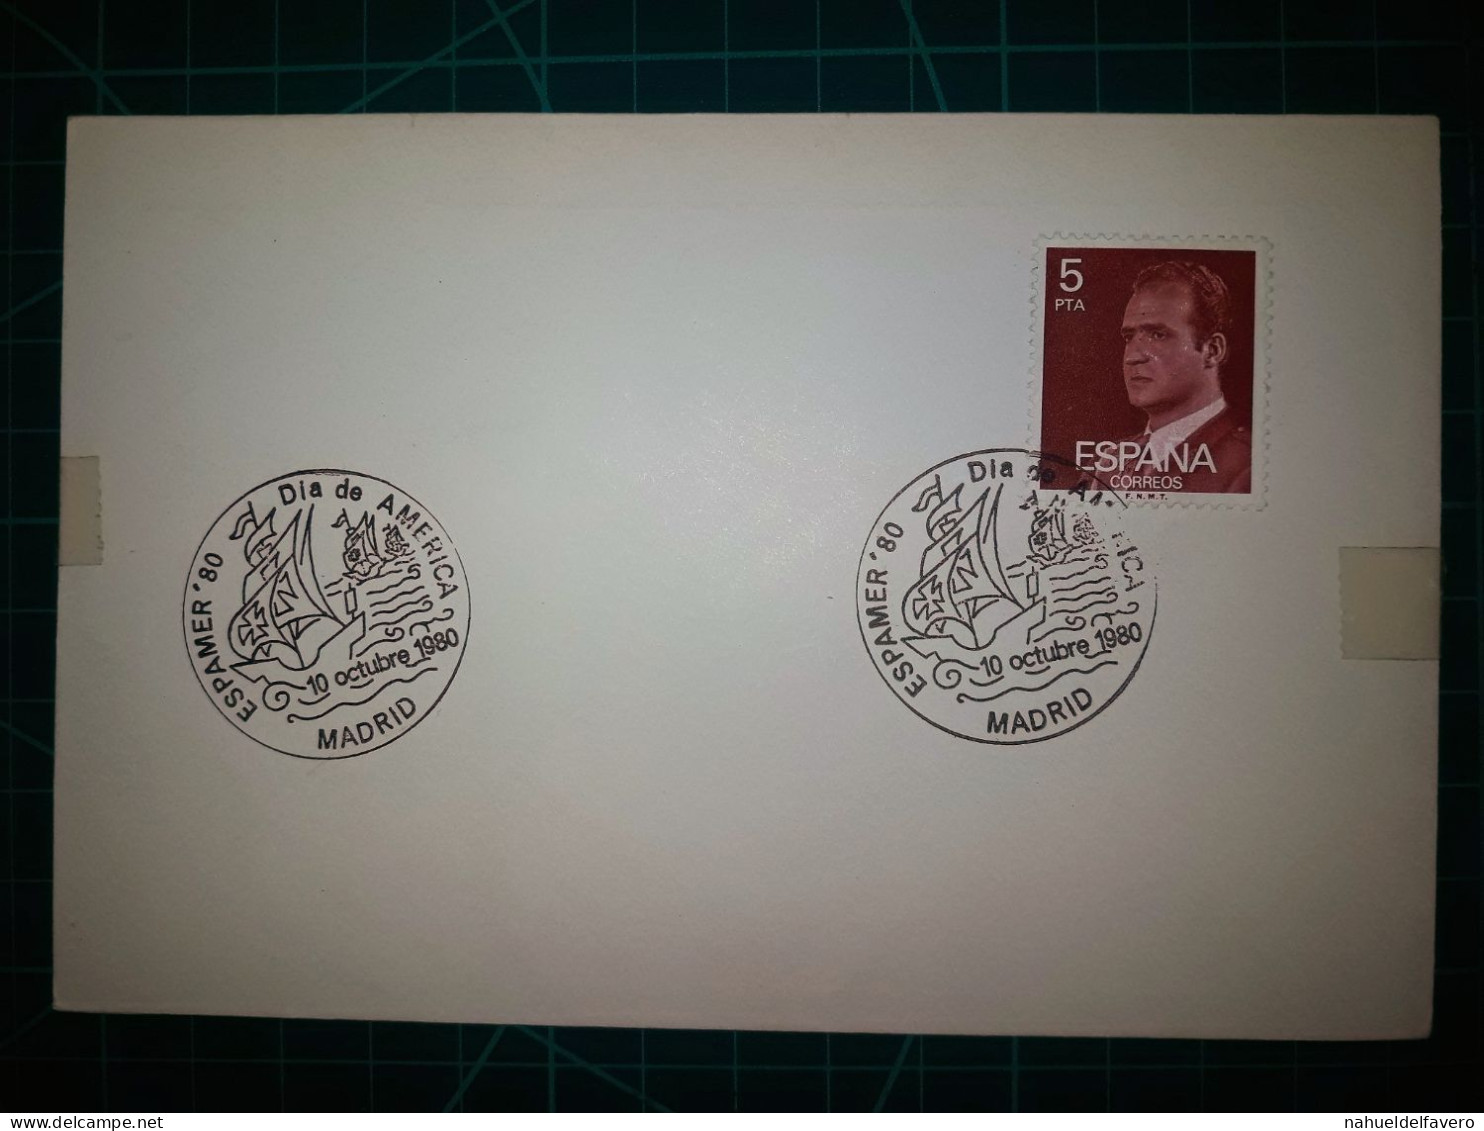 ESPAGNE : Enveloppe Avec Cachet Spécial D'Espamer 80, 10 Octobre, Fête De L'Amérique. Madrid. Année 1980. - Used Stamps